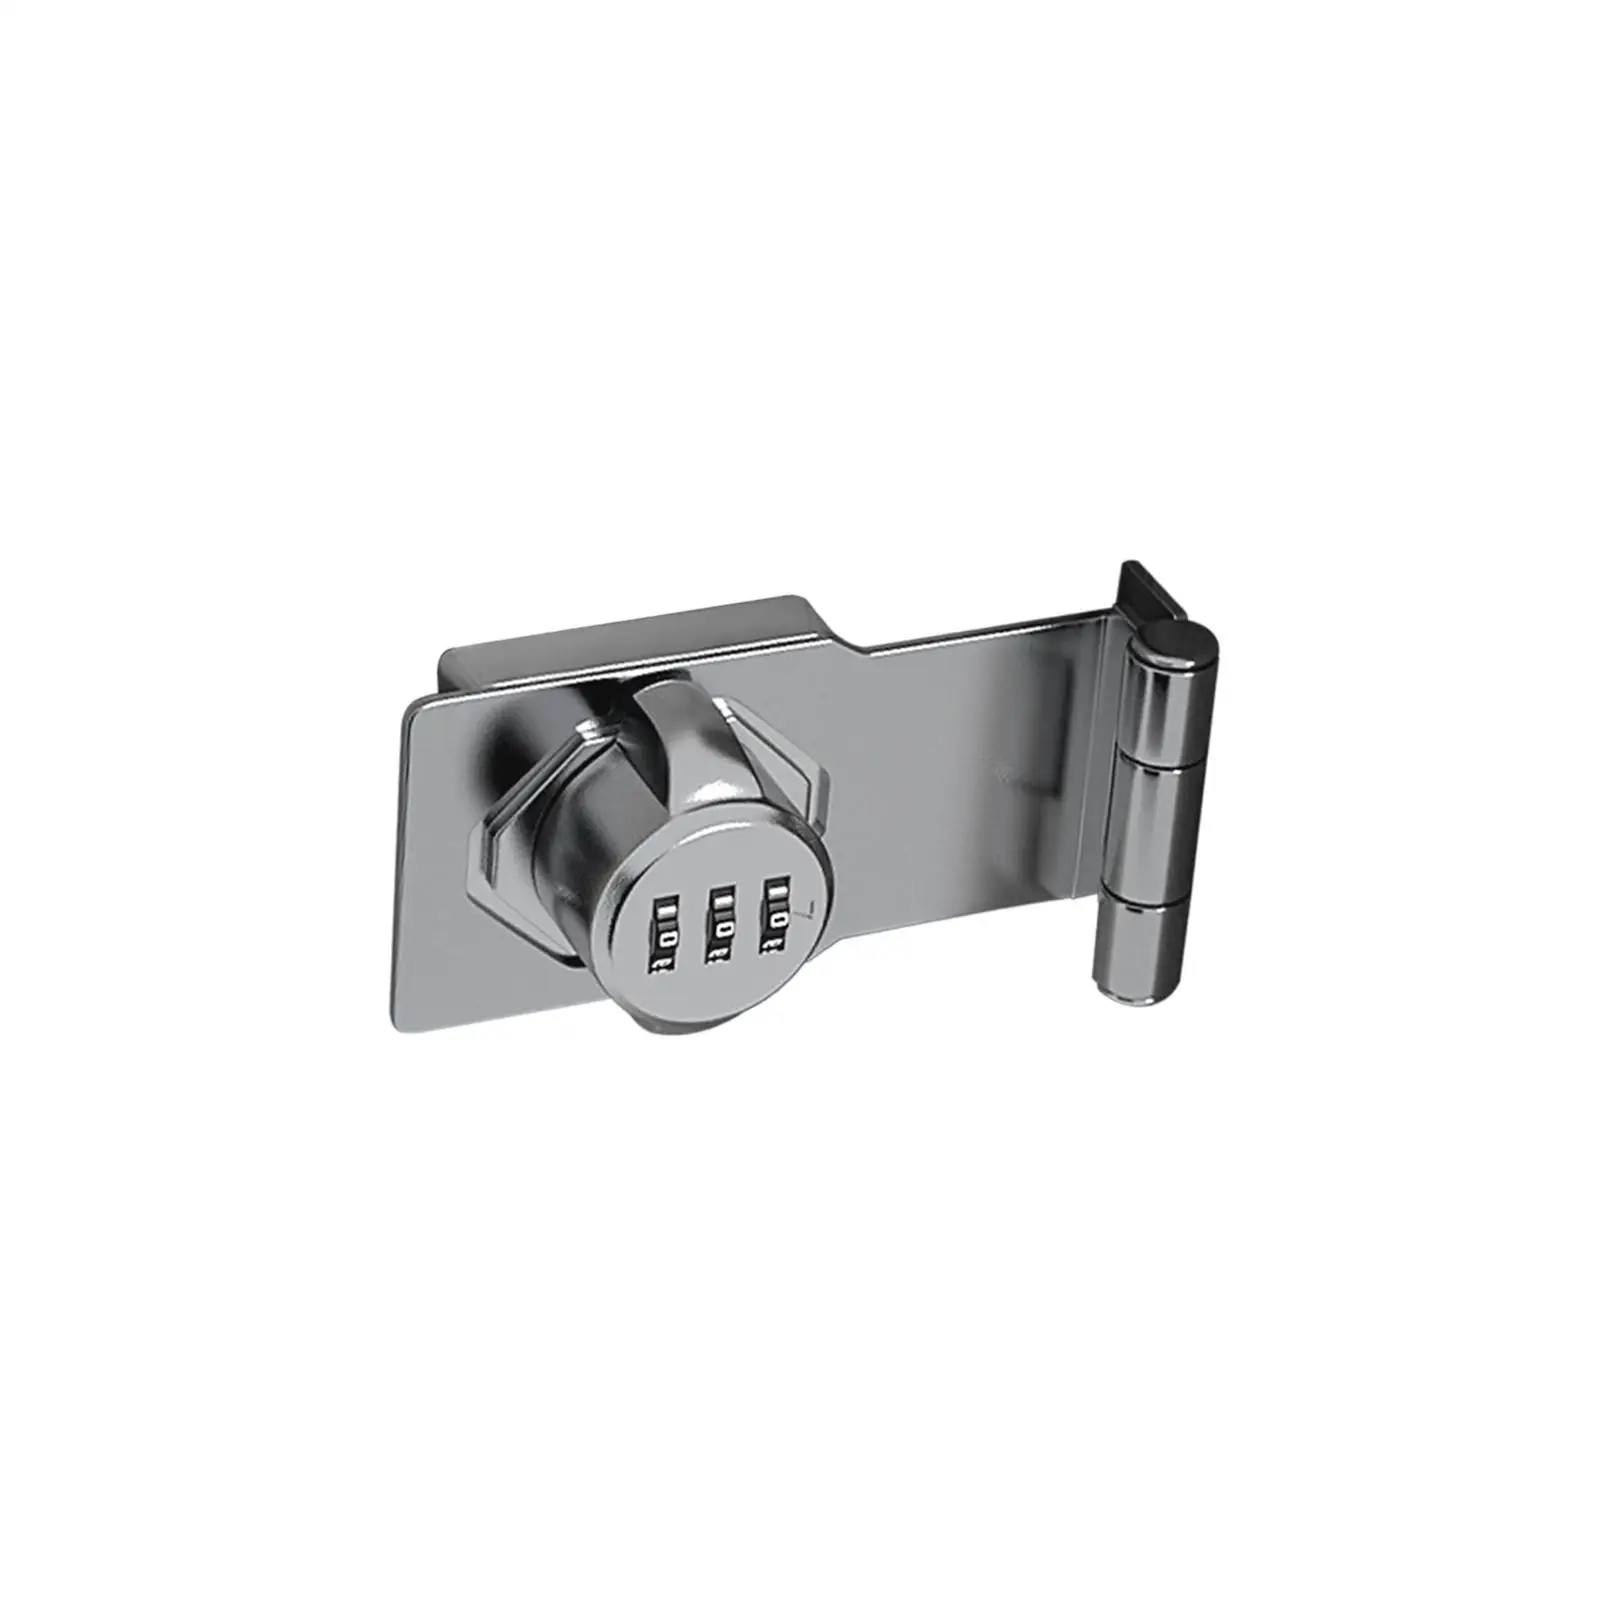 3 Digit Combination Lock Mechanical Combination Cam Lock Convenient Convenient